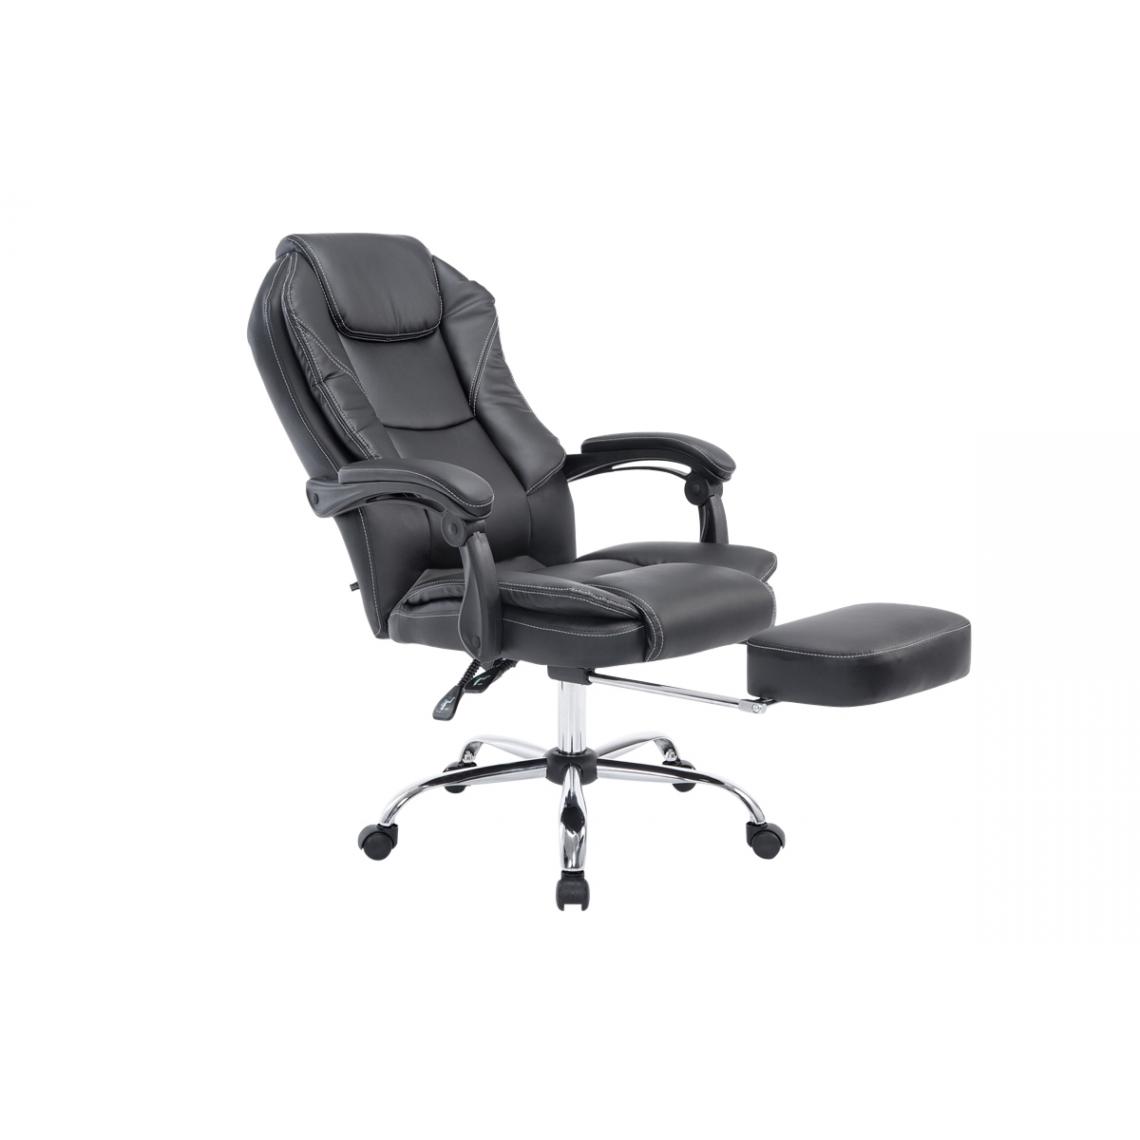 Icaverne - Magnifique Chaise de bureau categorie Maseru couleur noir - Chaises